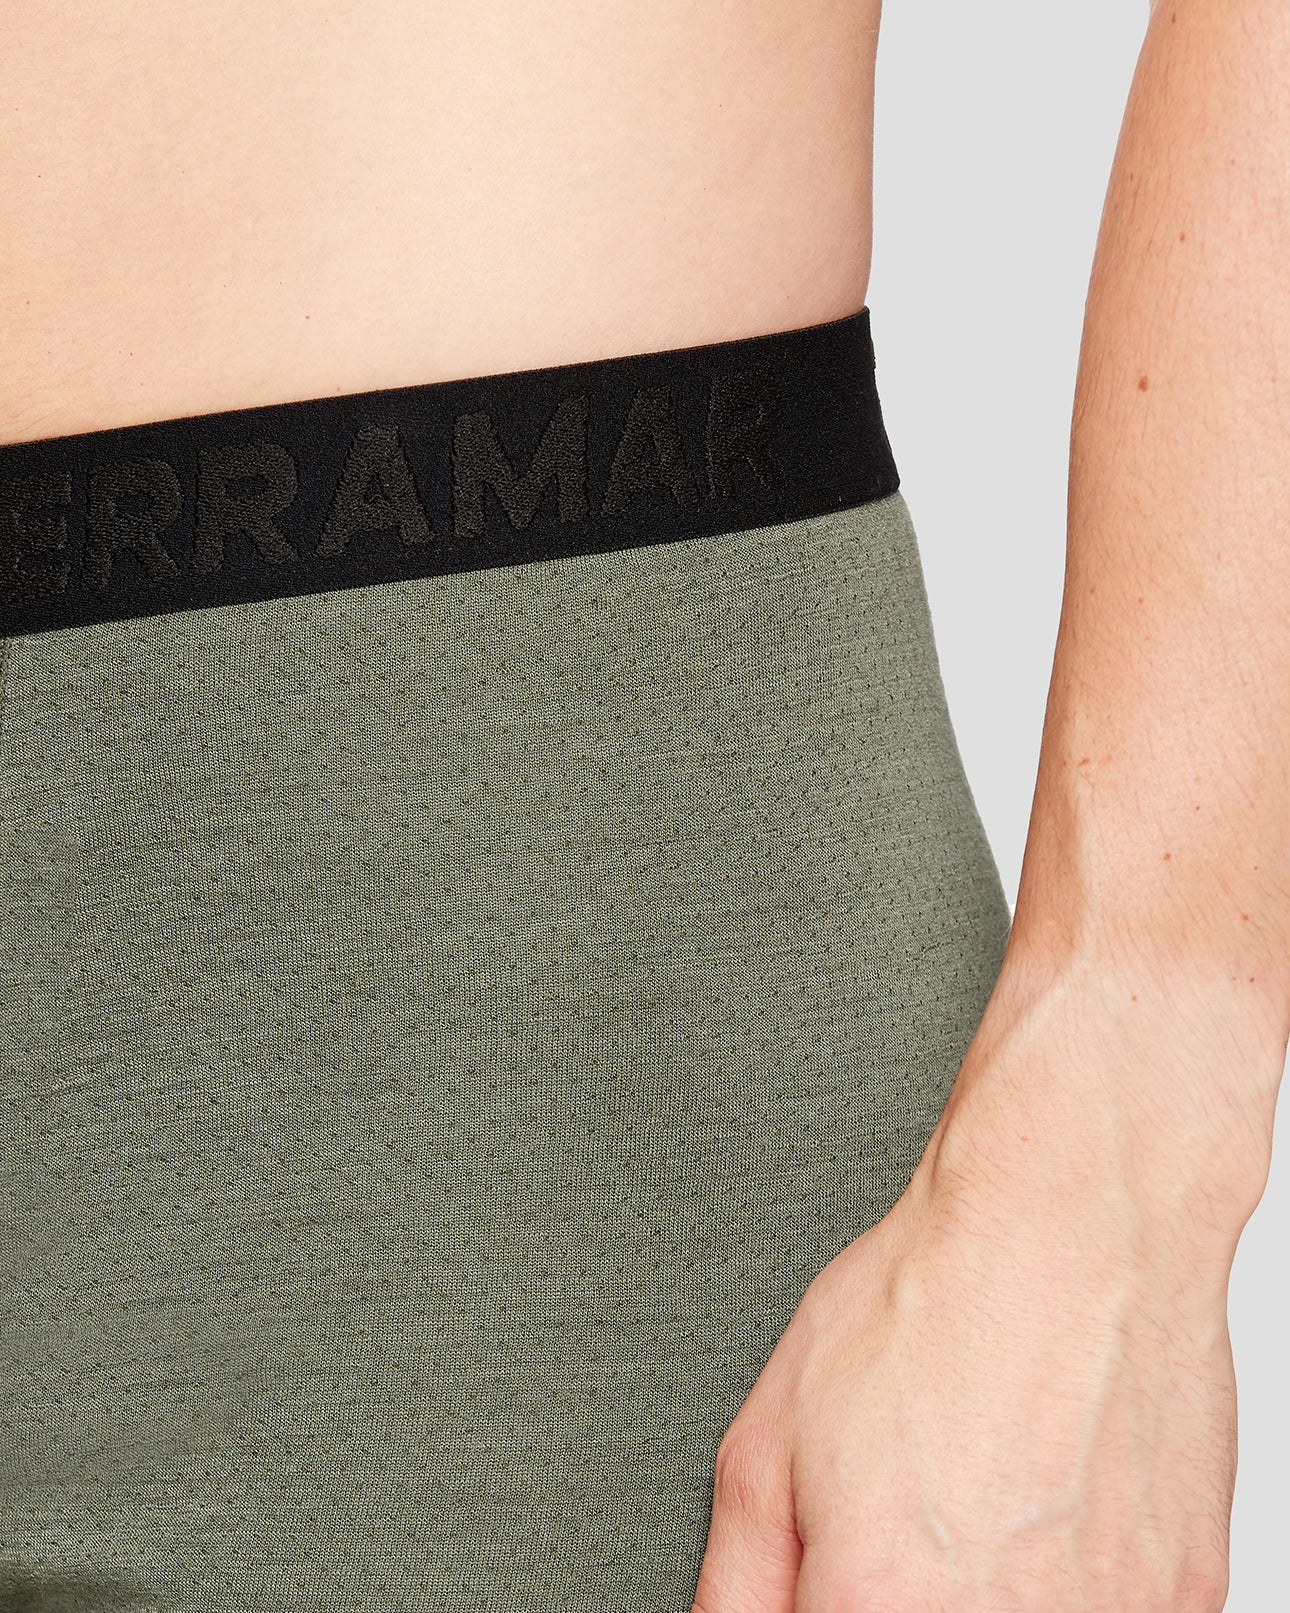 Terramar Woolskins Base Layer Pants - UPF 50, Merino Wool - Save 72%